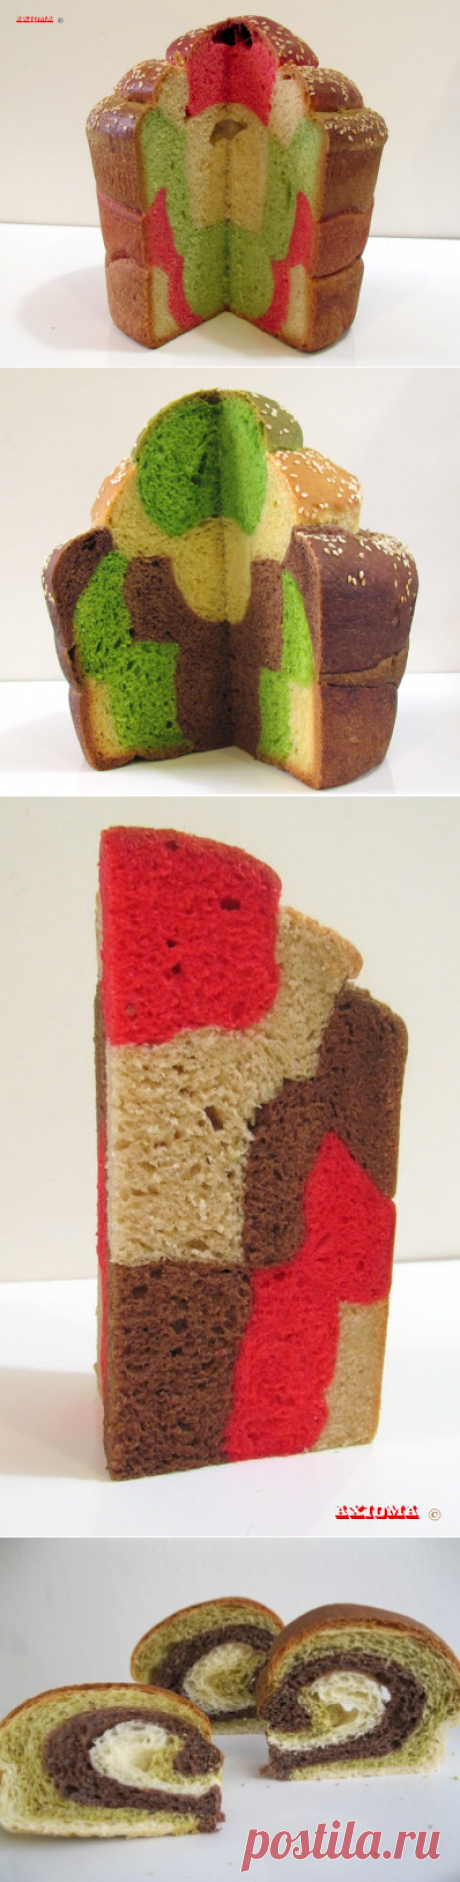 Хлебная Цветная Мозаика.Трехцветный хлеб в японском стиле